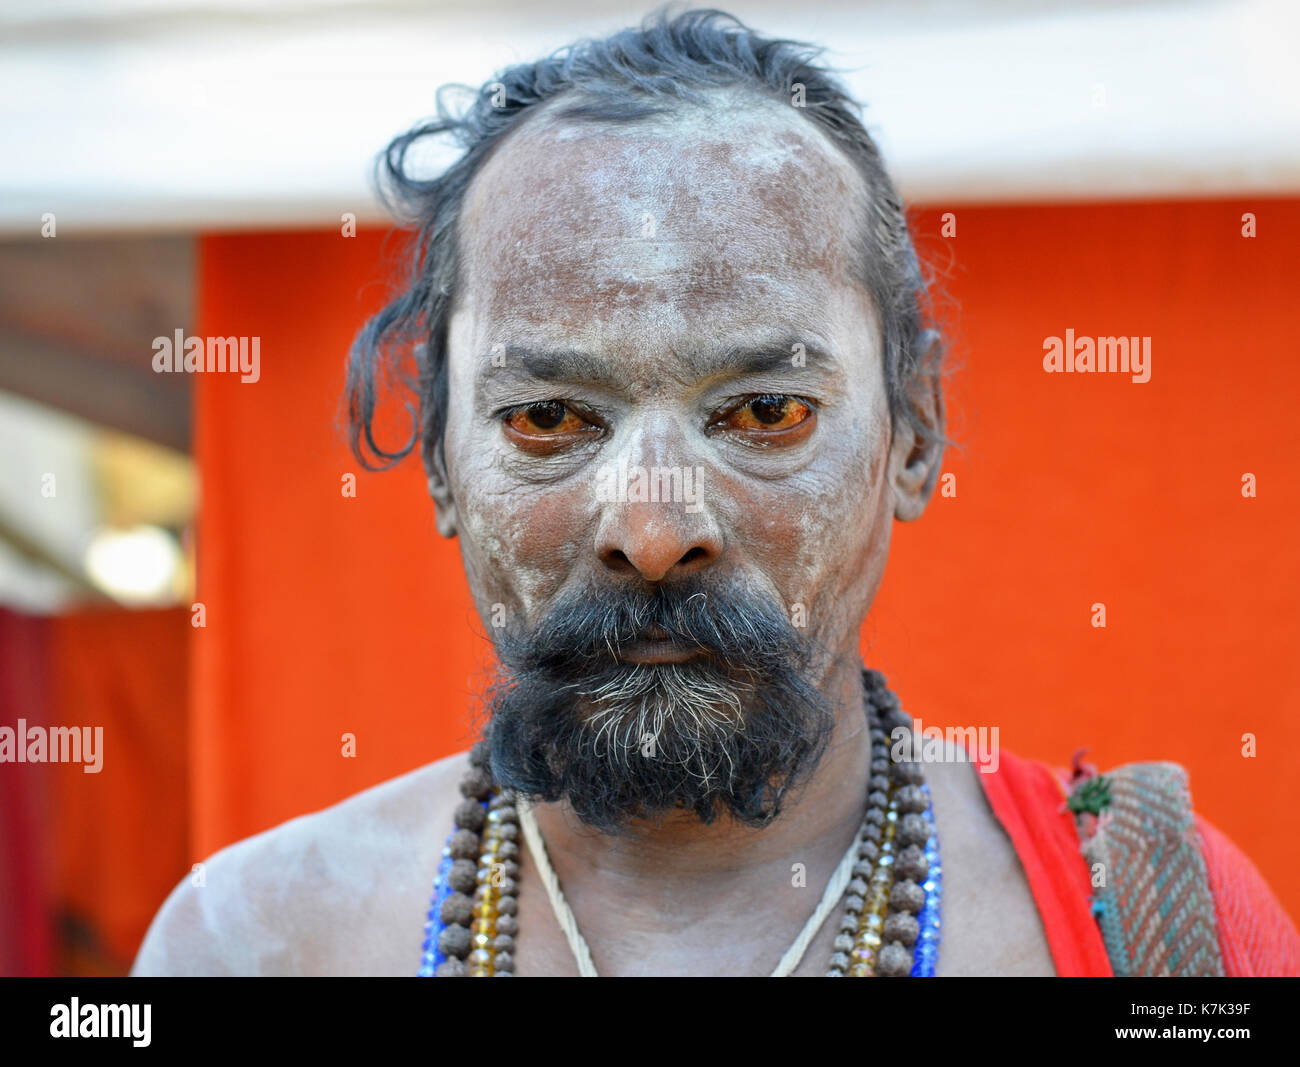 Indiano devoto indù con gli occhi sparati di sangue e sacro cenere bianca (vibhuti) tutto il suo volto pone per la macchina fotografica durante Shivratri Mela. Foto Stock